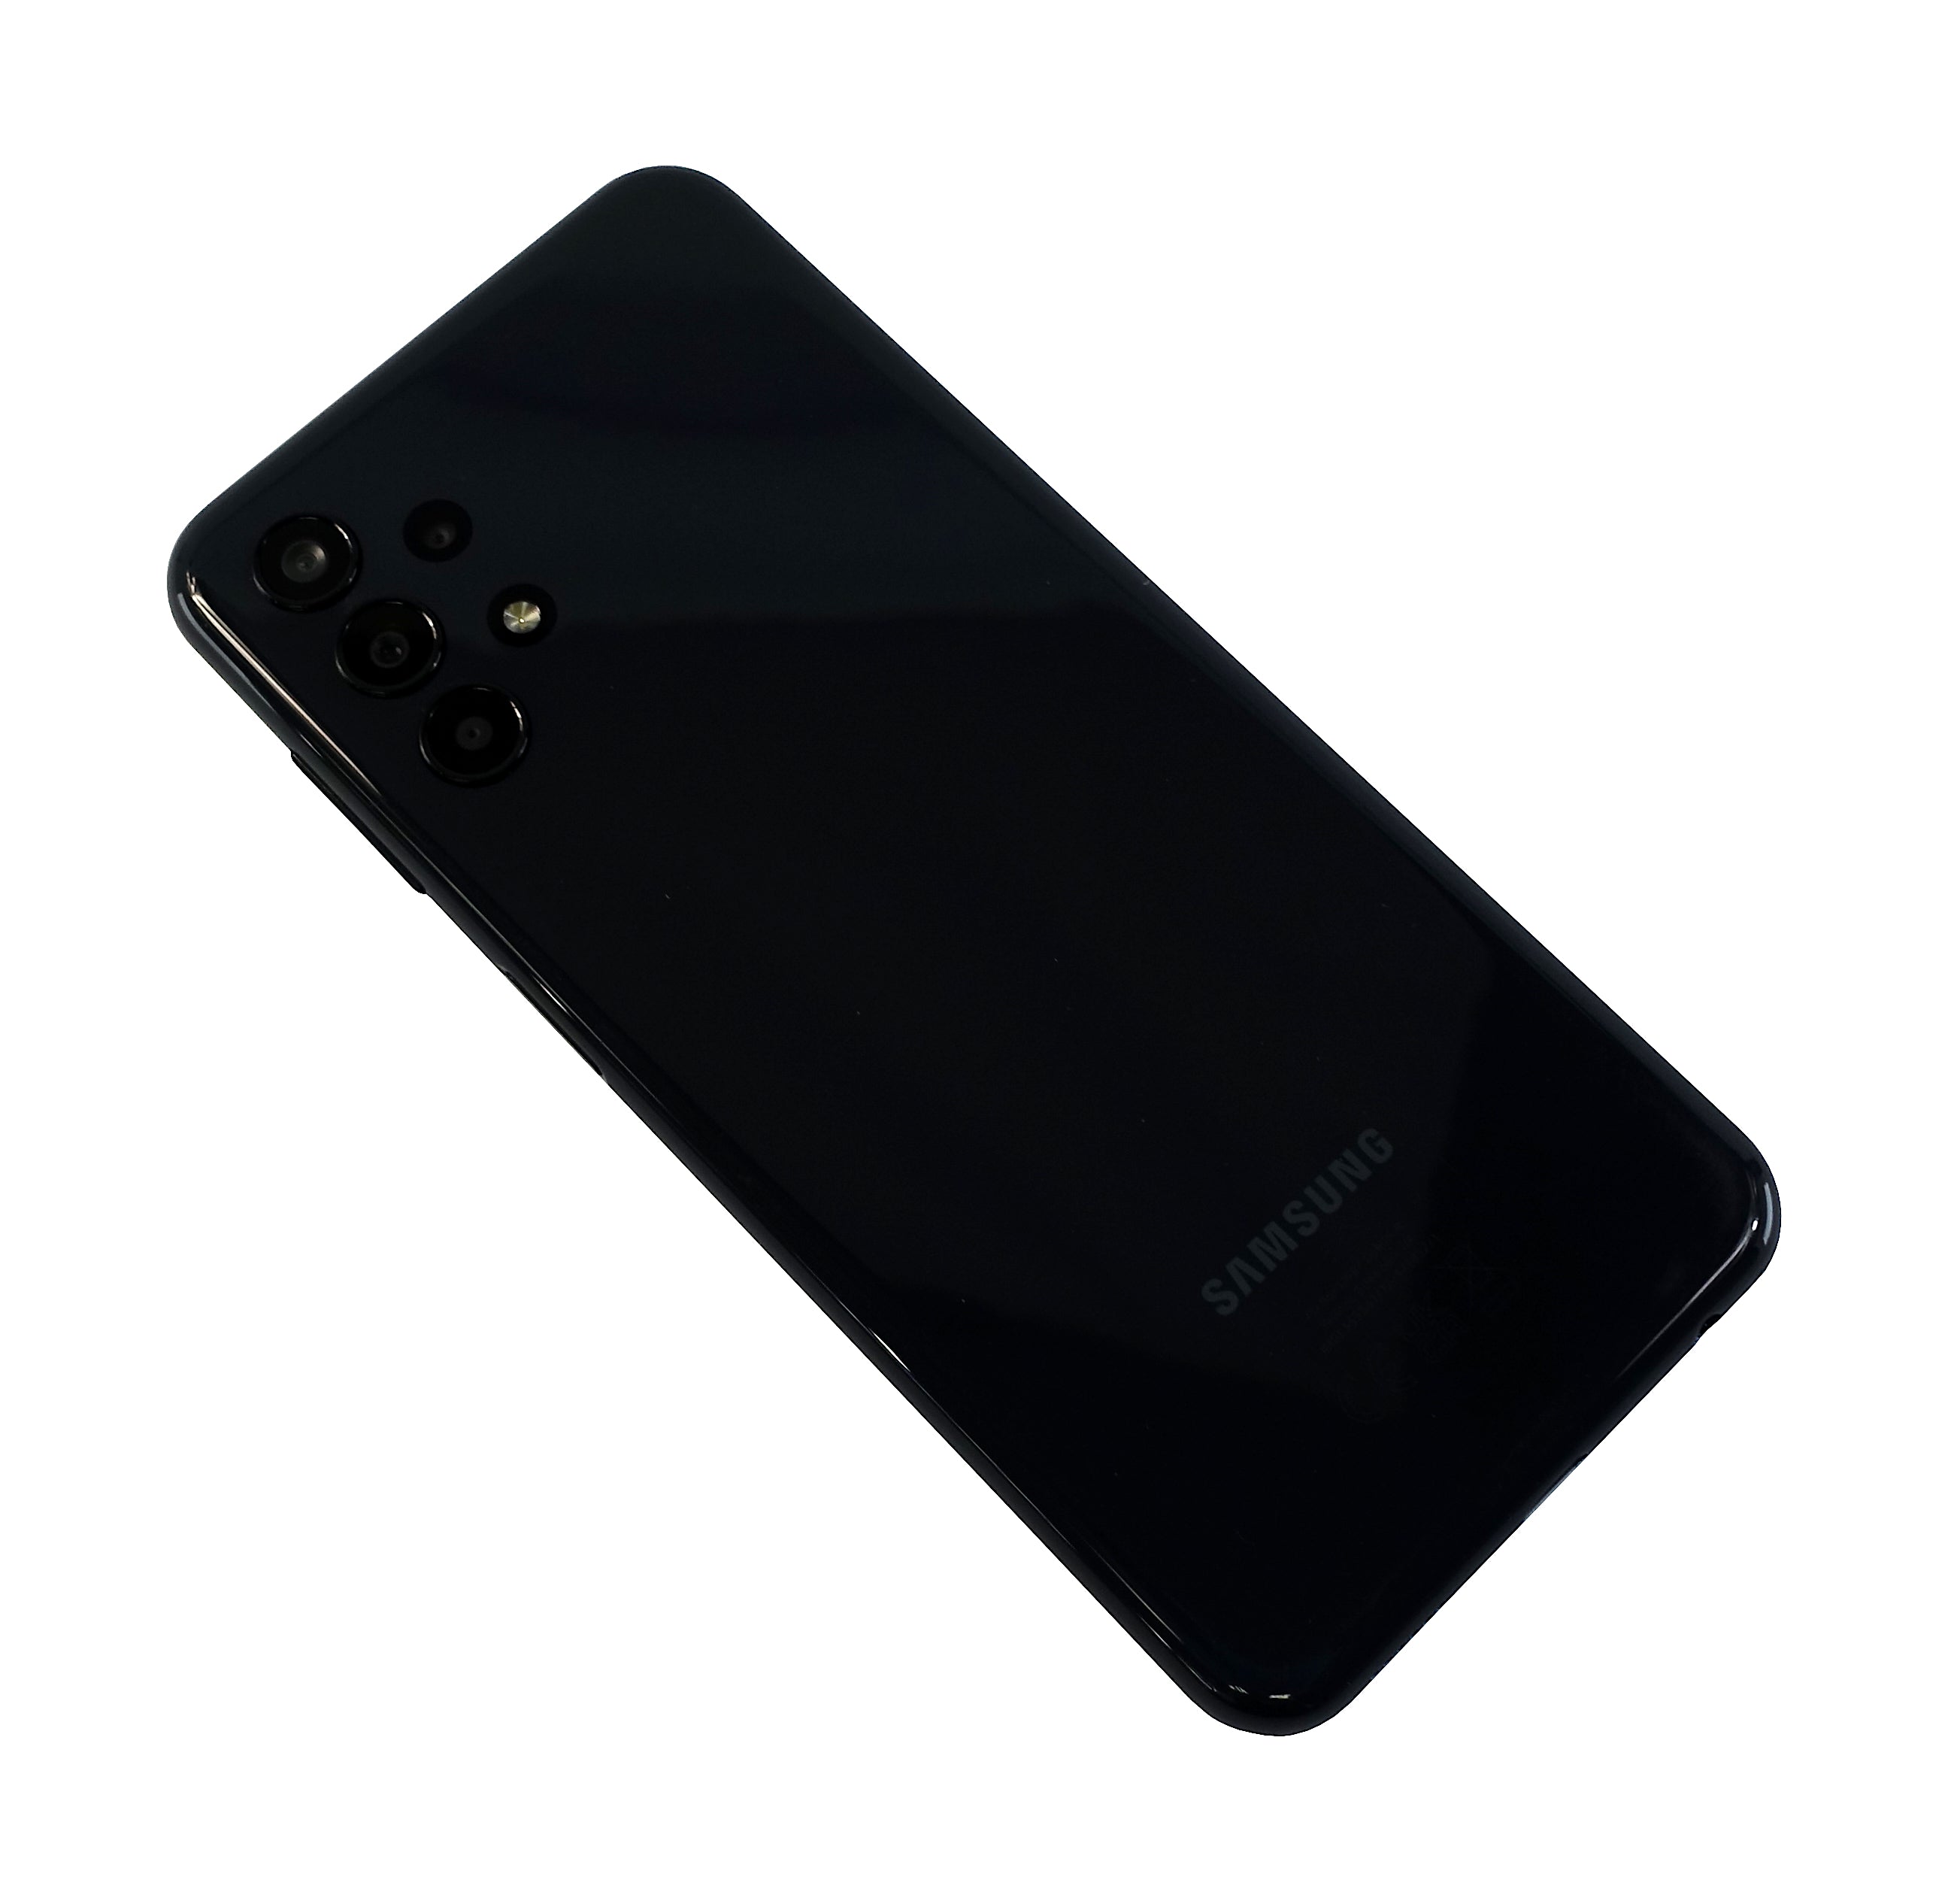 Samsung Galaxy A13 Smartphone, 64GB, Network Unlocked, Black, SM-A137F